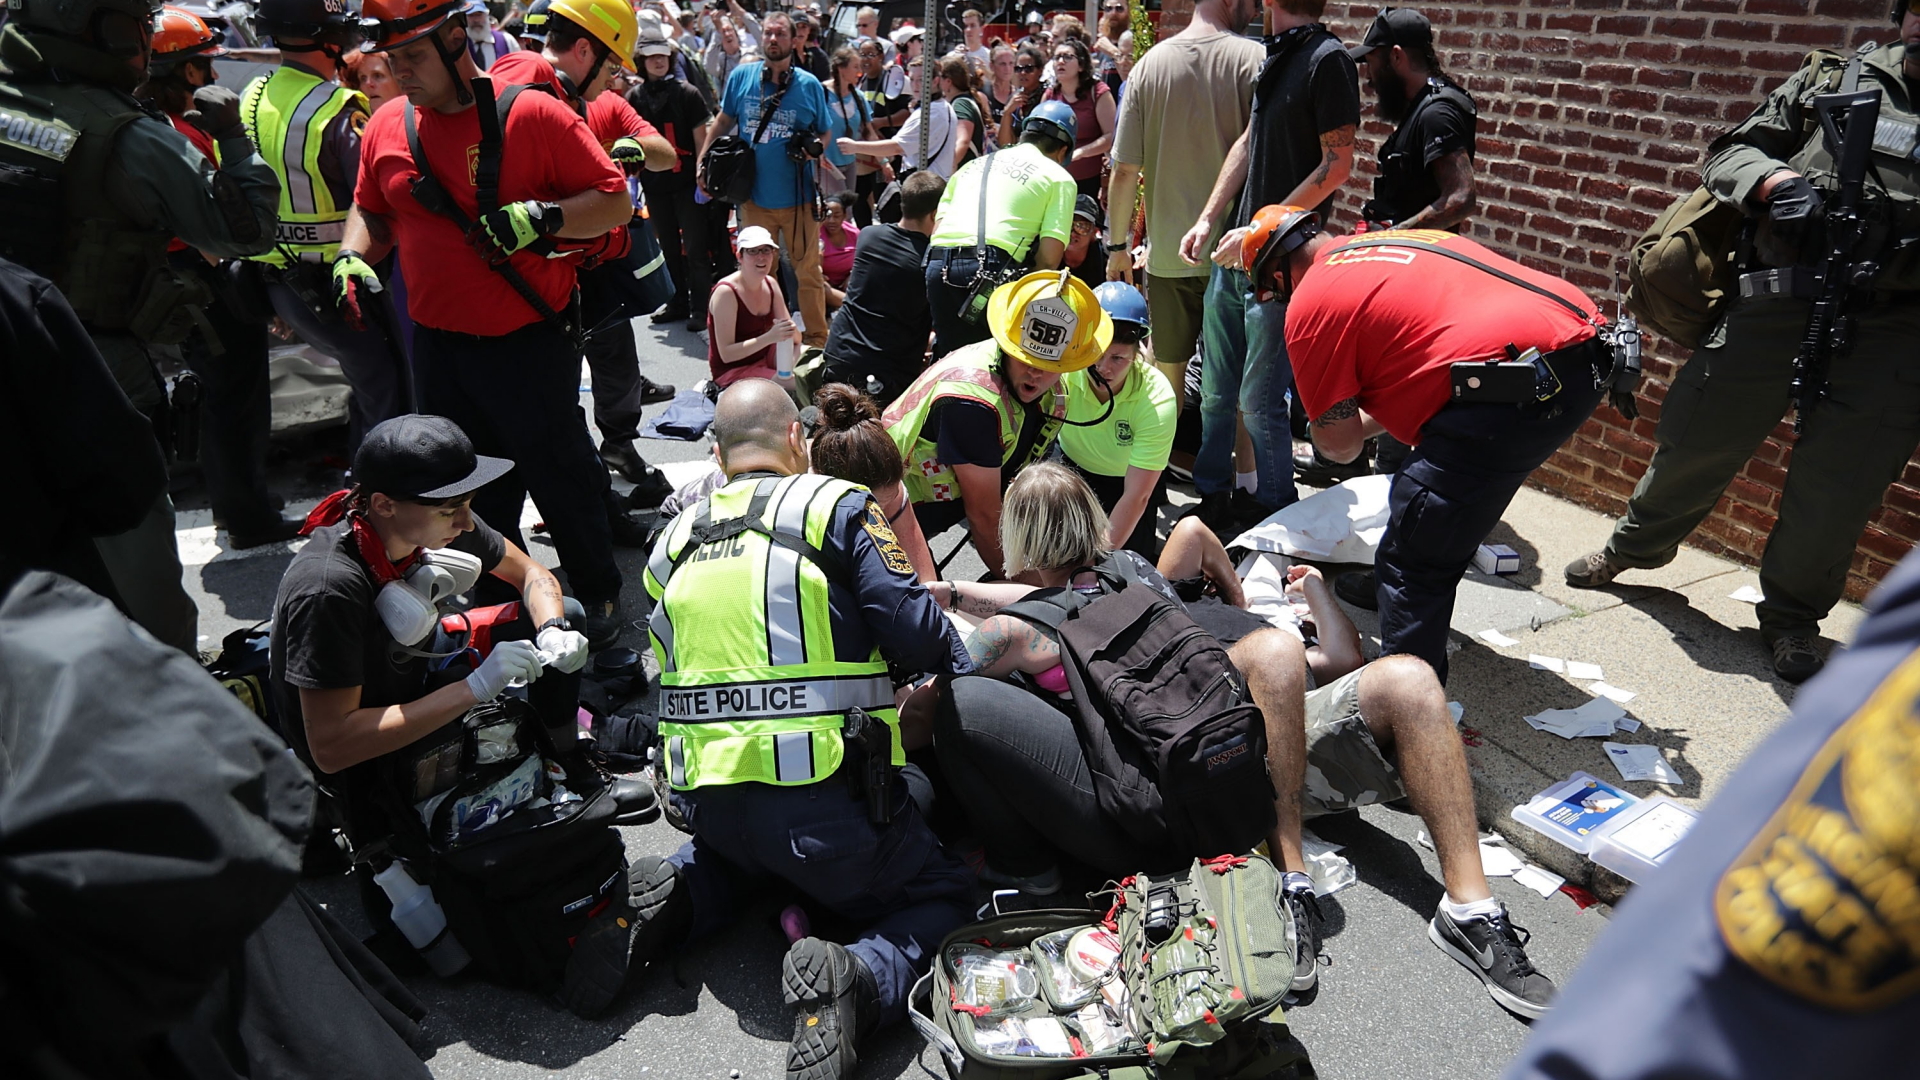 Sanitäter versorgen Verletzte, nachdem ein Wagen in die Menge fuhr